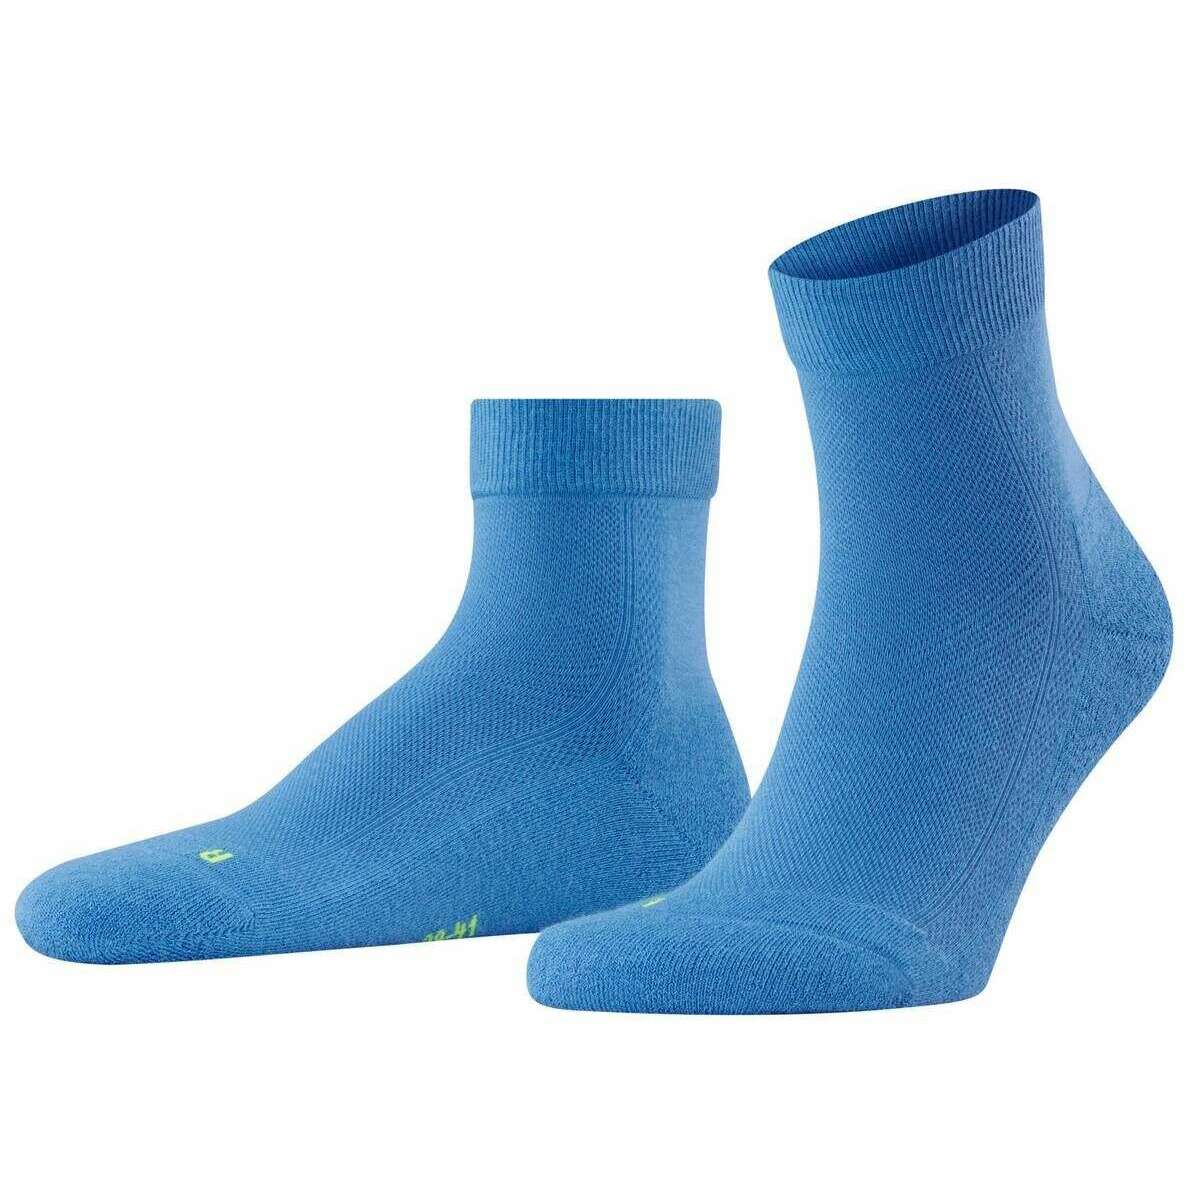 Falke Cool Kick Short Socks - Ribbon Blue